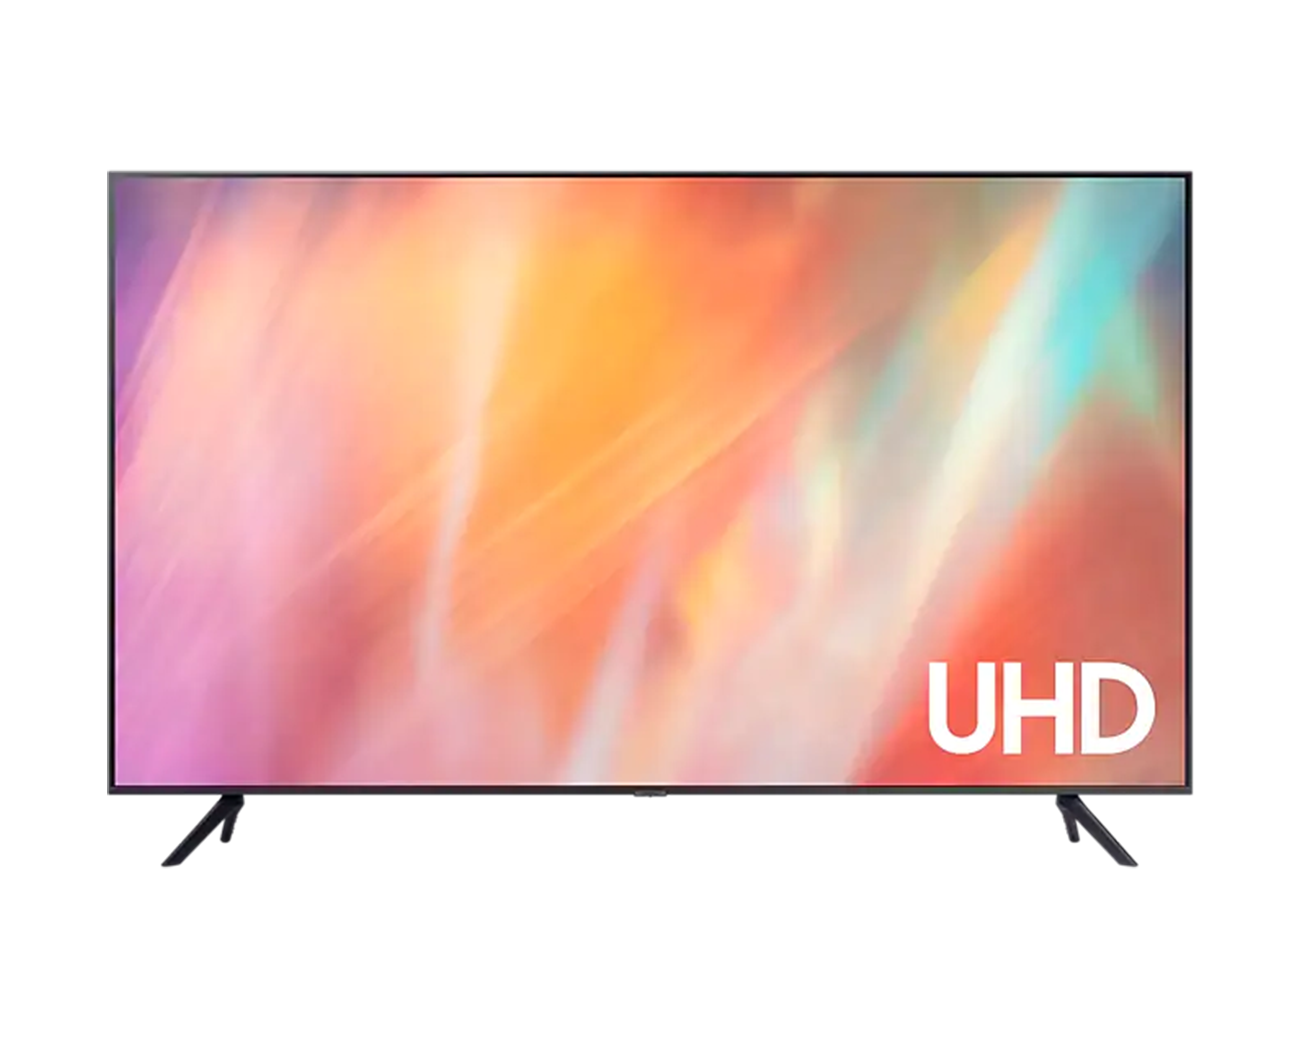 Samsung Smart TV 50 Pulgadas UHD 4K UN50AU7090GXZS